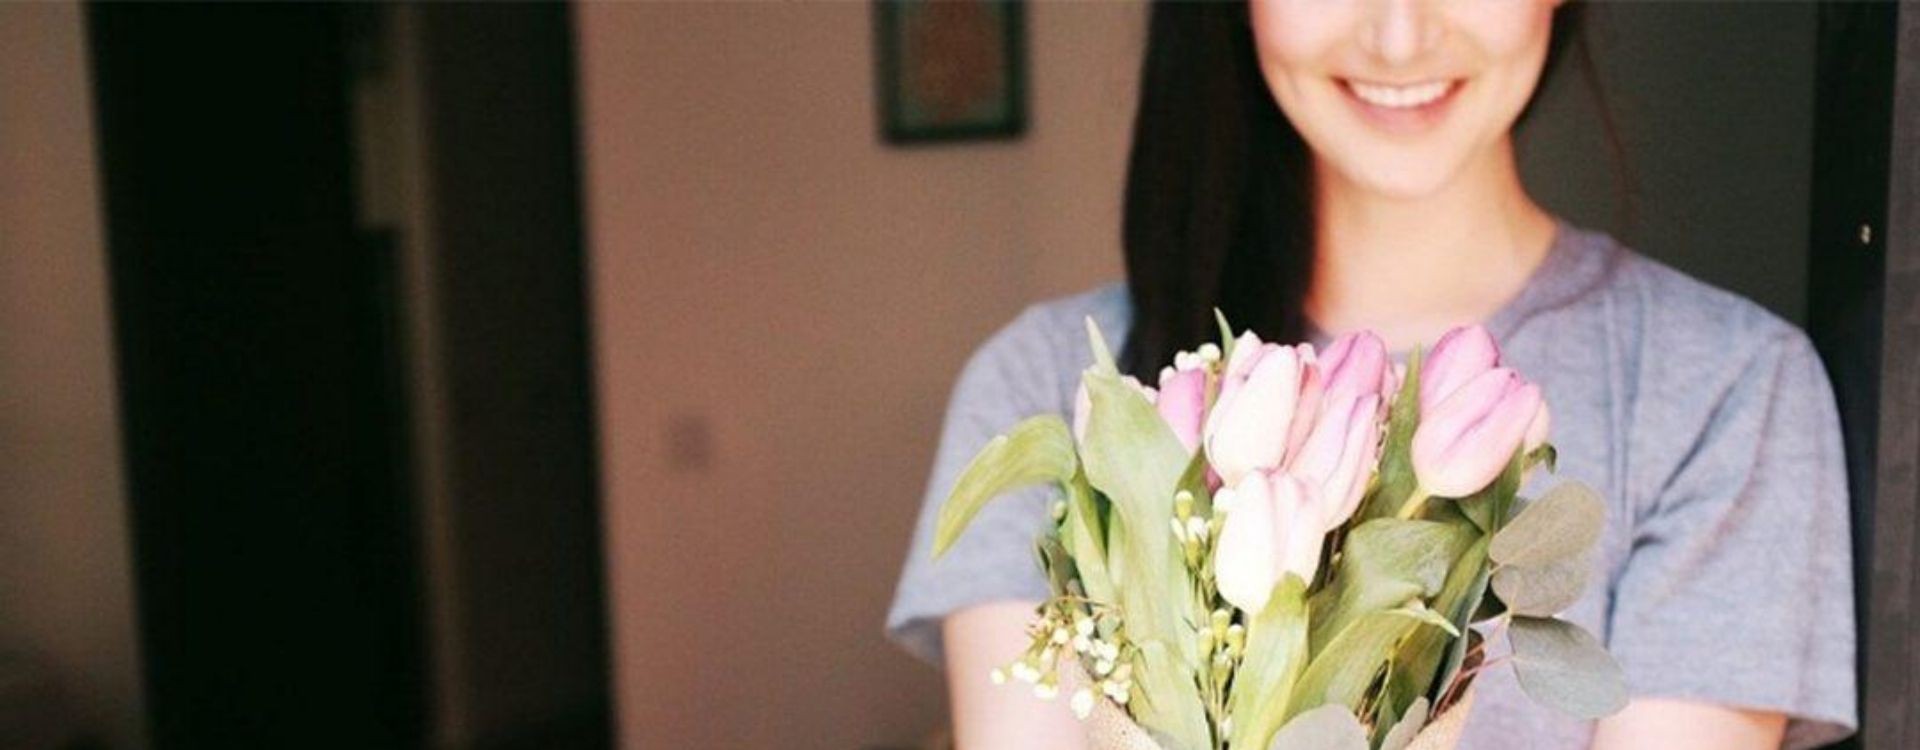 ✓ Las flores más bonitas para sorprender a tu pareja